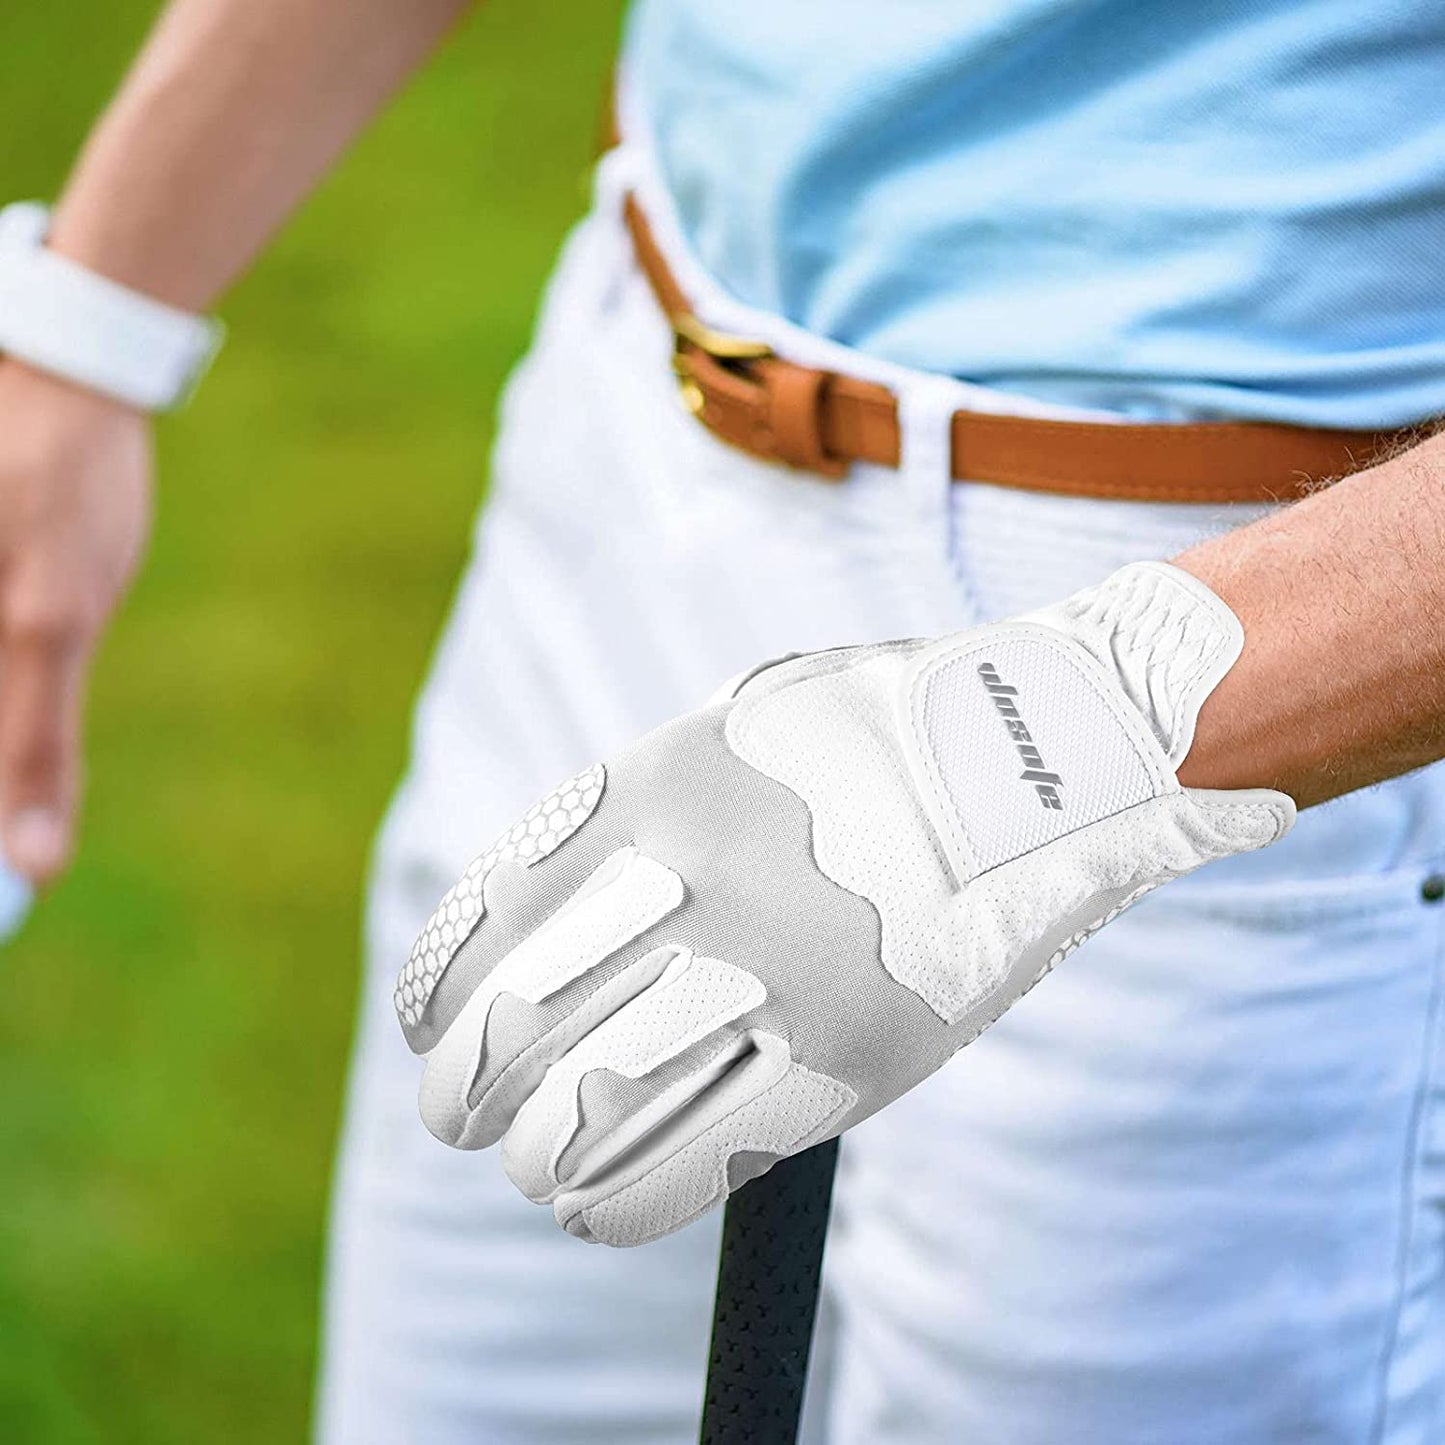 wosofe Golfhandschuhe für Herren Linke Hand Lycra Koreanisch Nanometer Grip Weich Bequem 2er Pack 